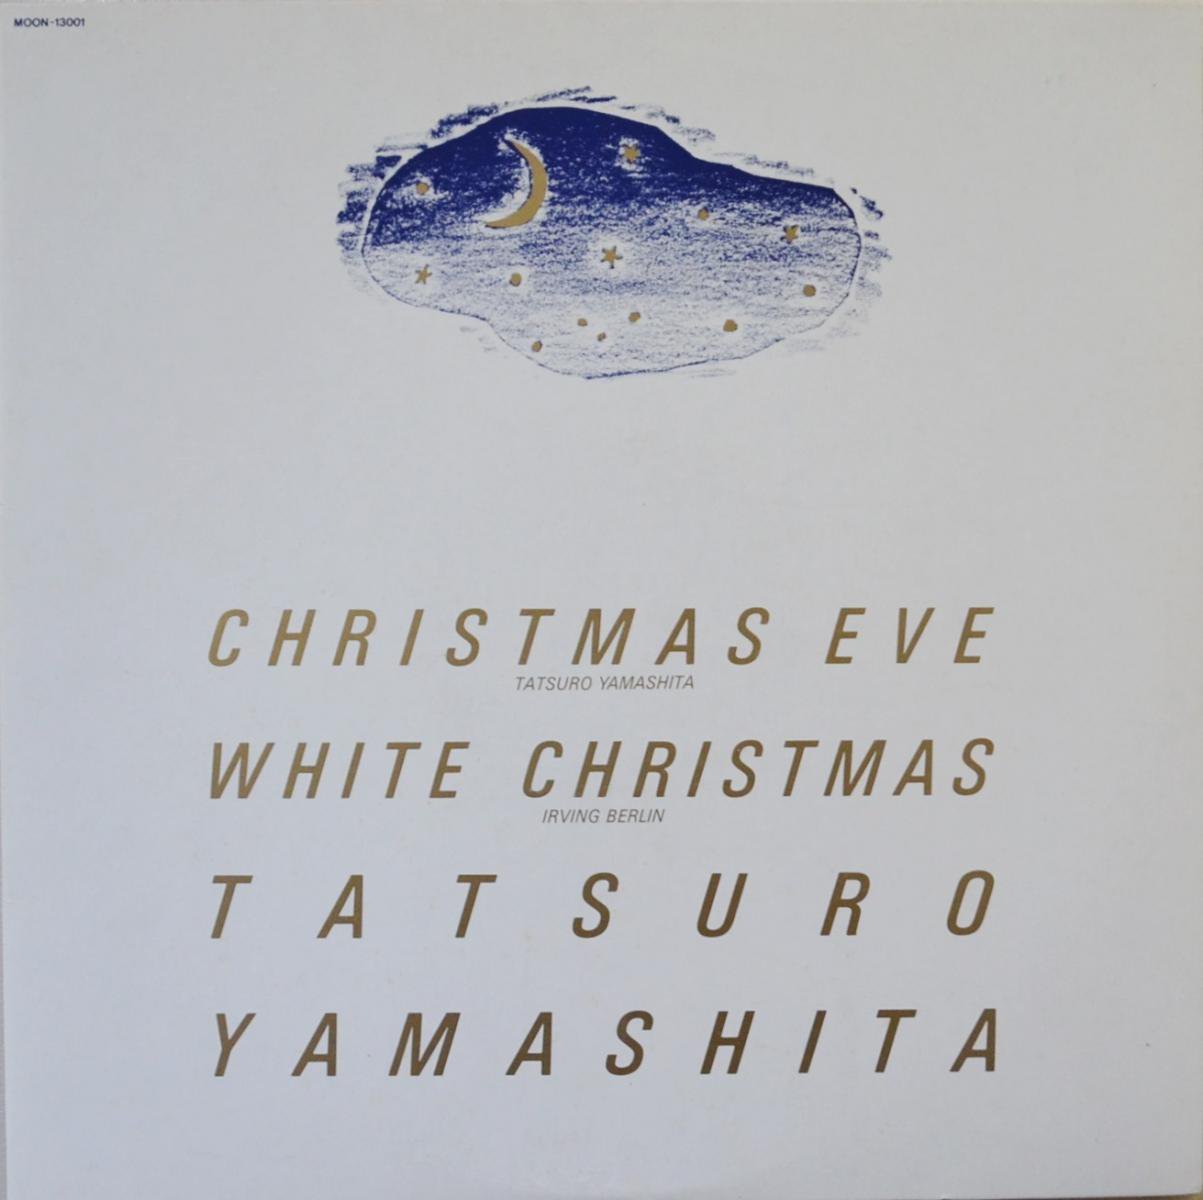 山下達郎 Tatsuro Yamashita クリスマス イブ Christmas Eve ホワイト クリスマス White Christmas Picture Disc 12 Hip Tank Records